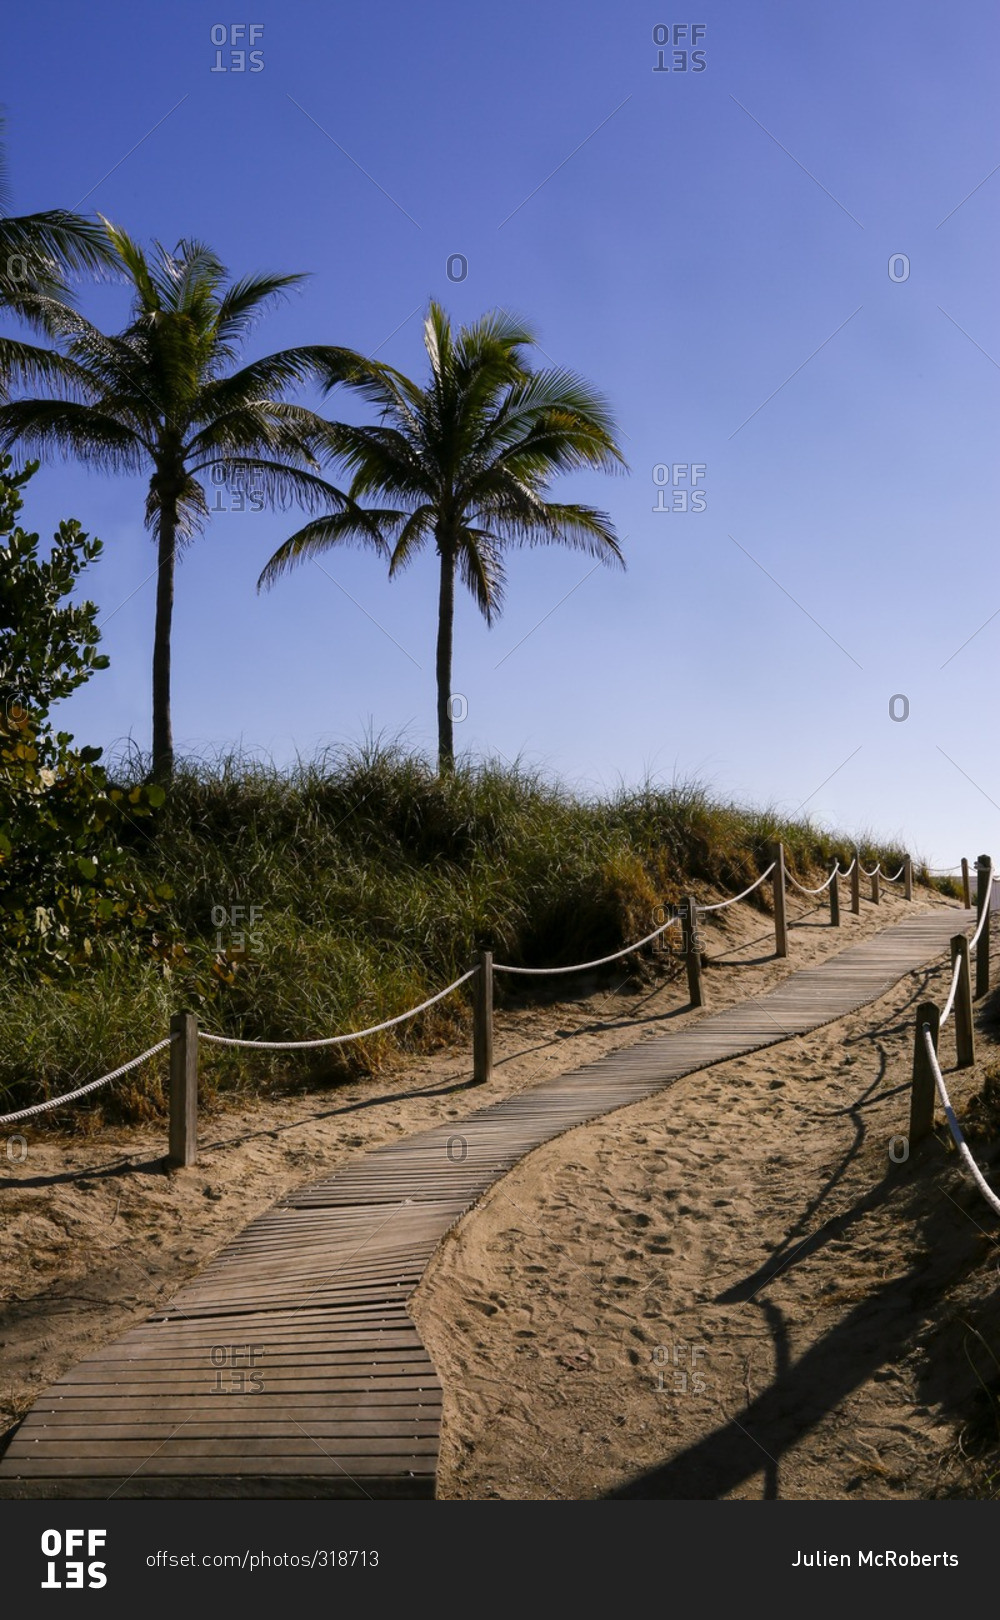 Boardwalk on Miami beach in South Beach, FL